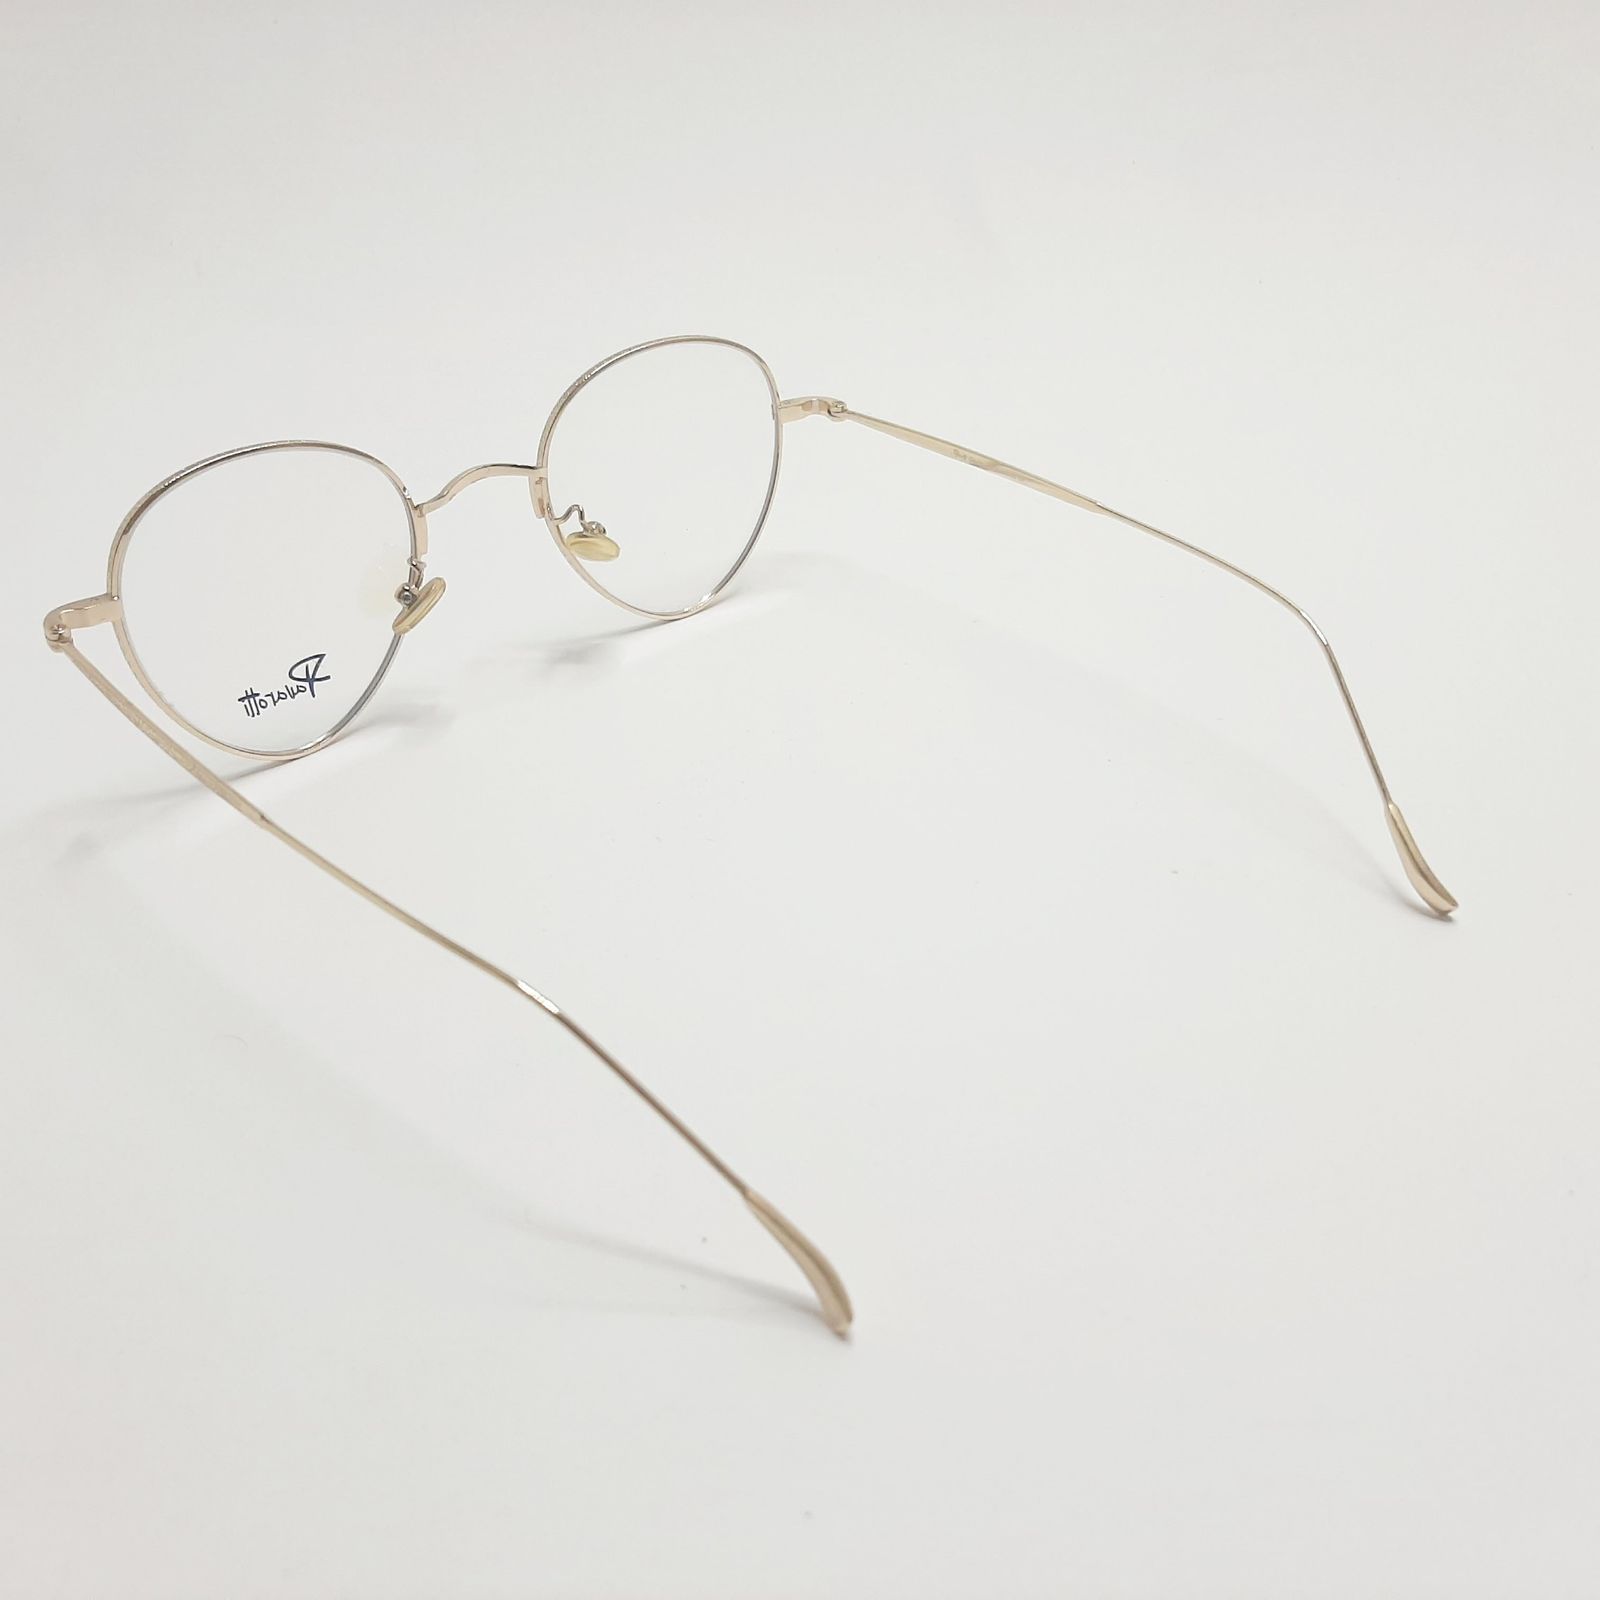 فریم عینک طبی پاواروتی مدل P52059c6 -  - 6